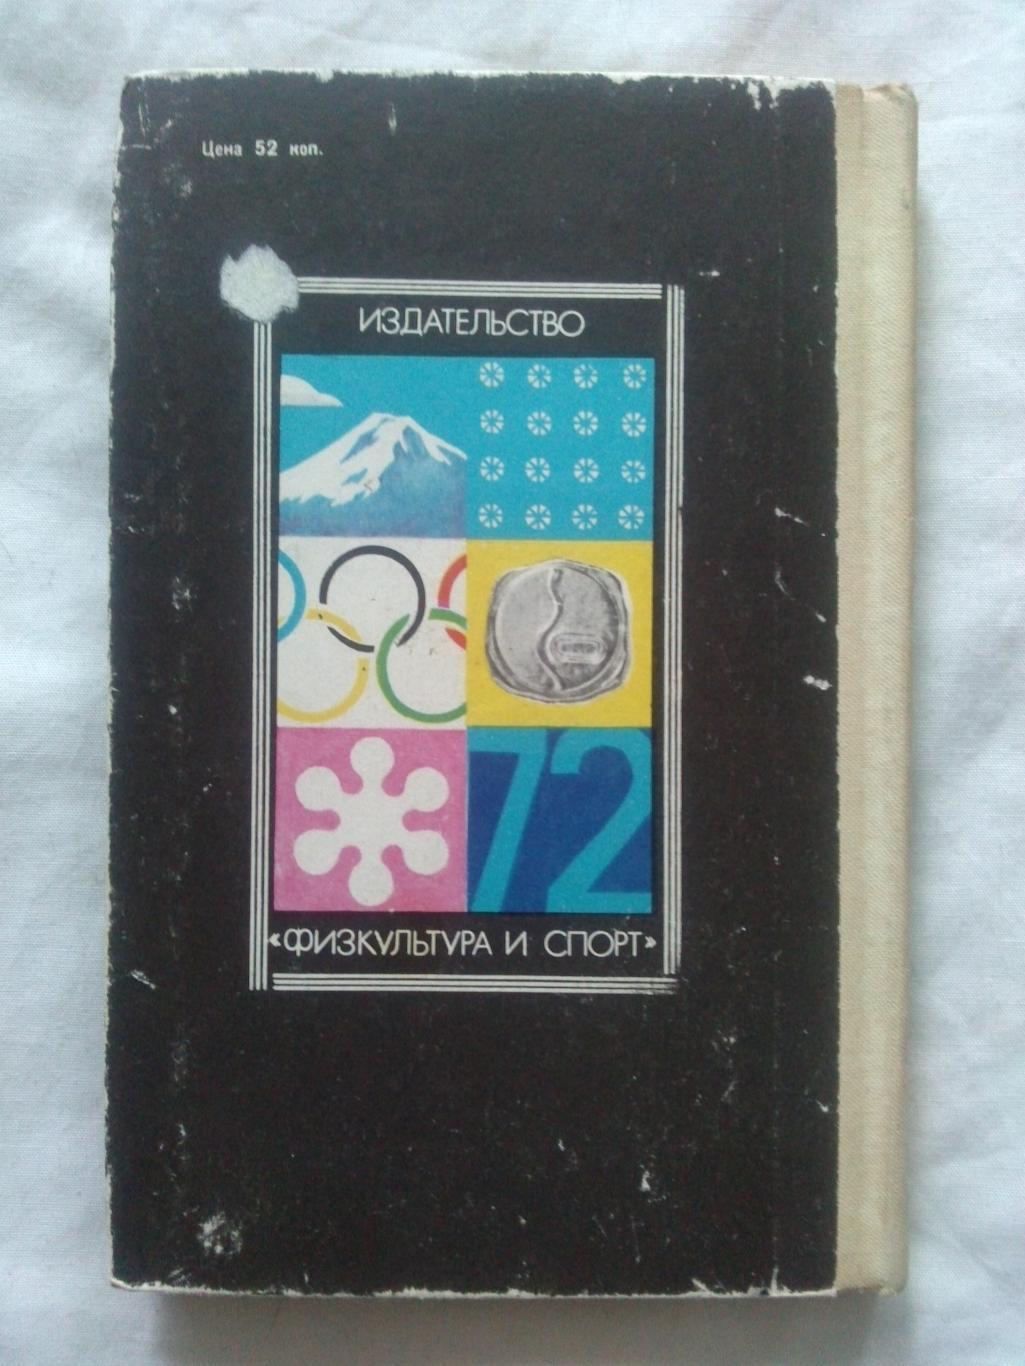 Олимпийское созвездие 1974 г. Победители XI зимних и ХХ Олимпийских игр 1972 г. 1